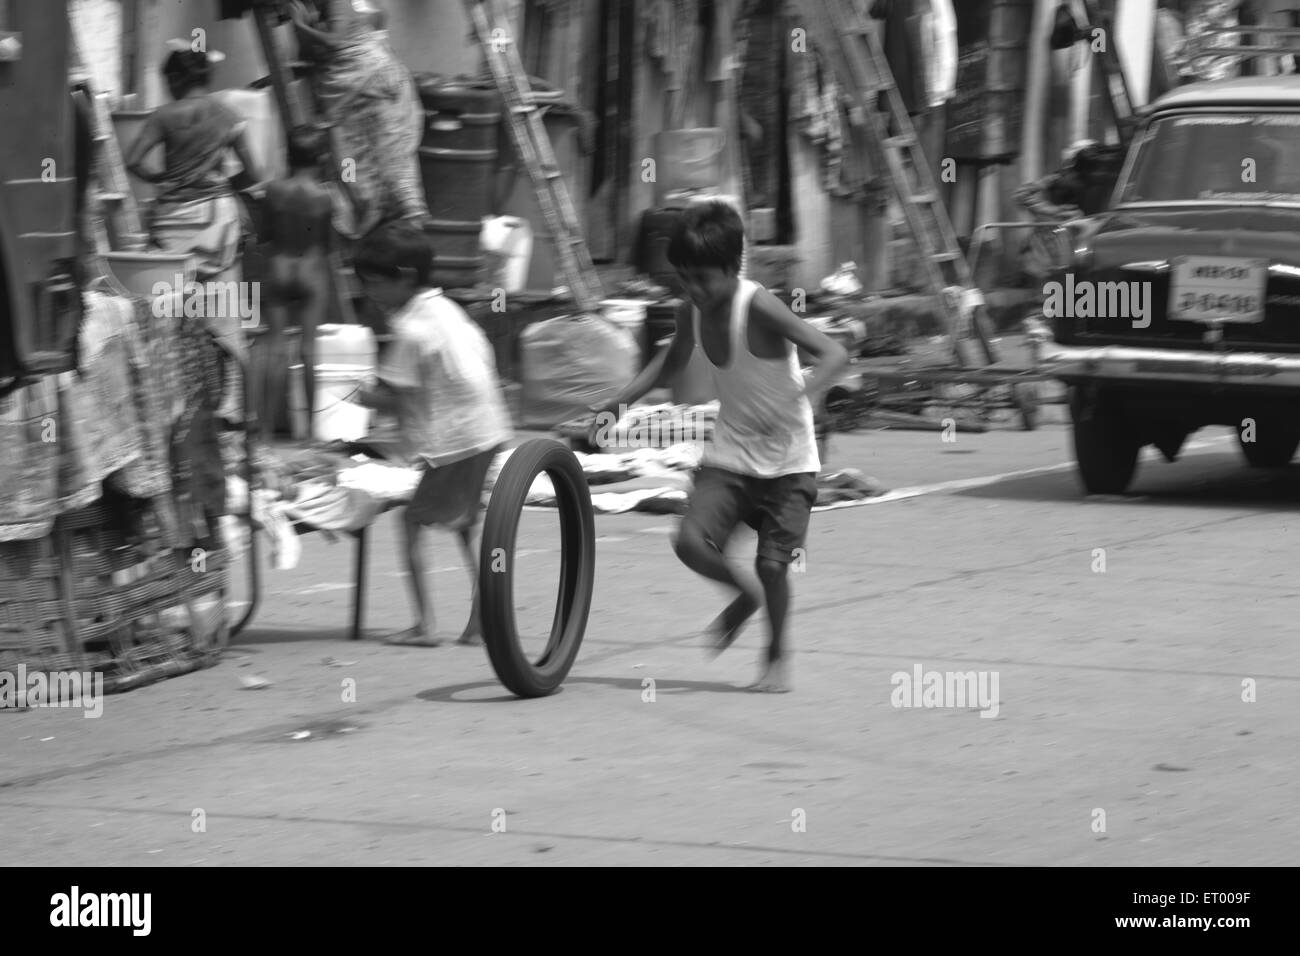 Jungen spielen mit Reifen Indien Slums N M Joshi Straße Bombay Mumbai Maharashtra, Indien Stockfoto